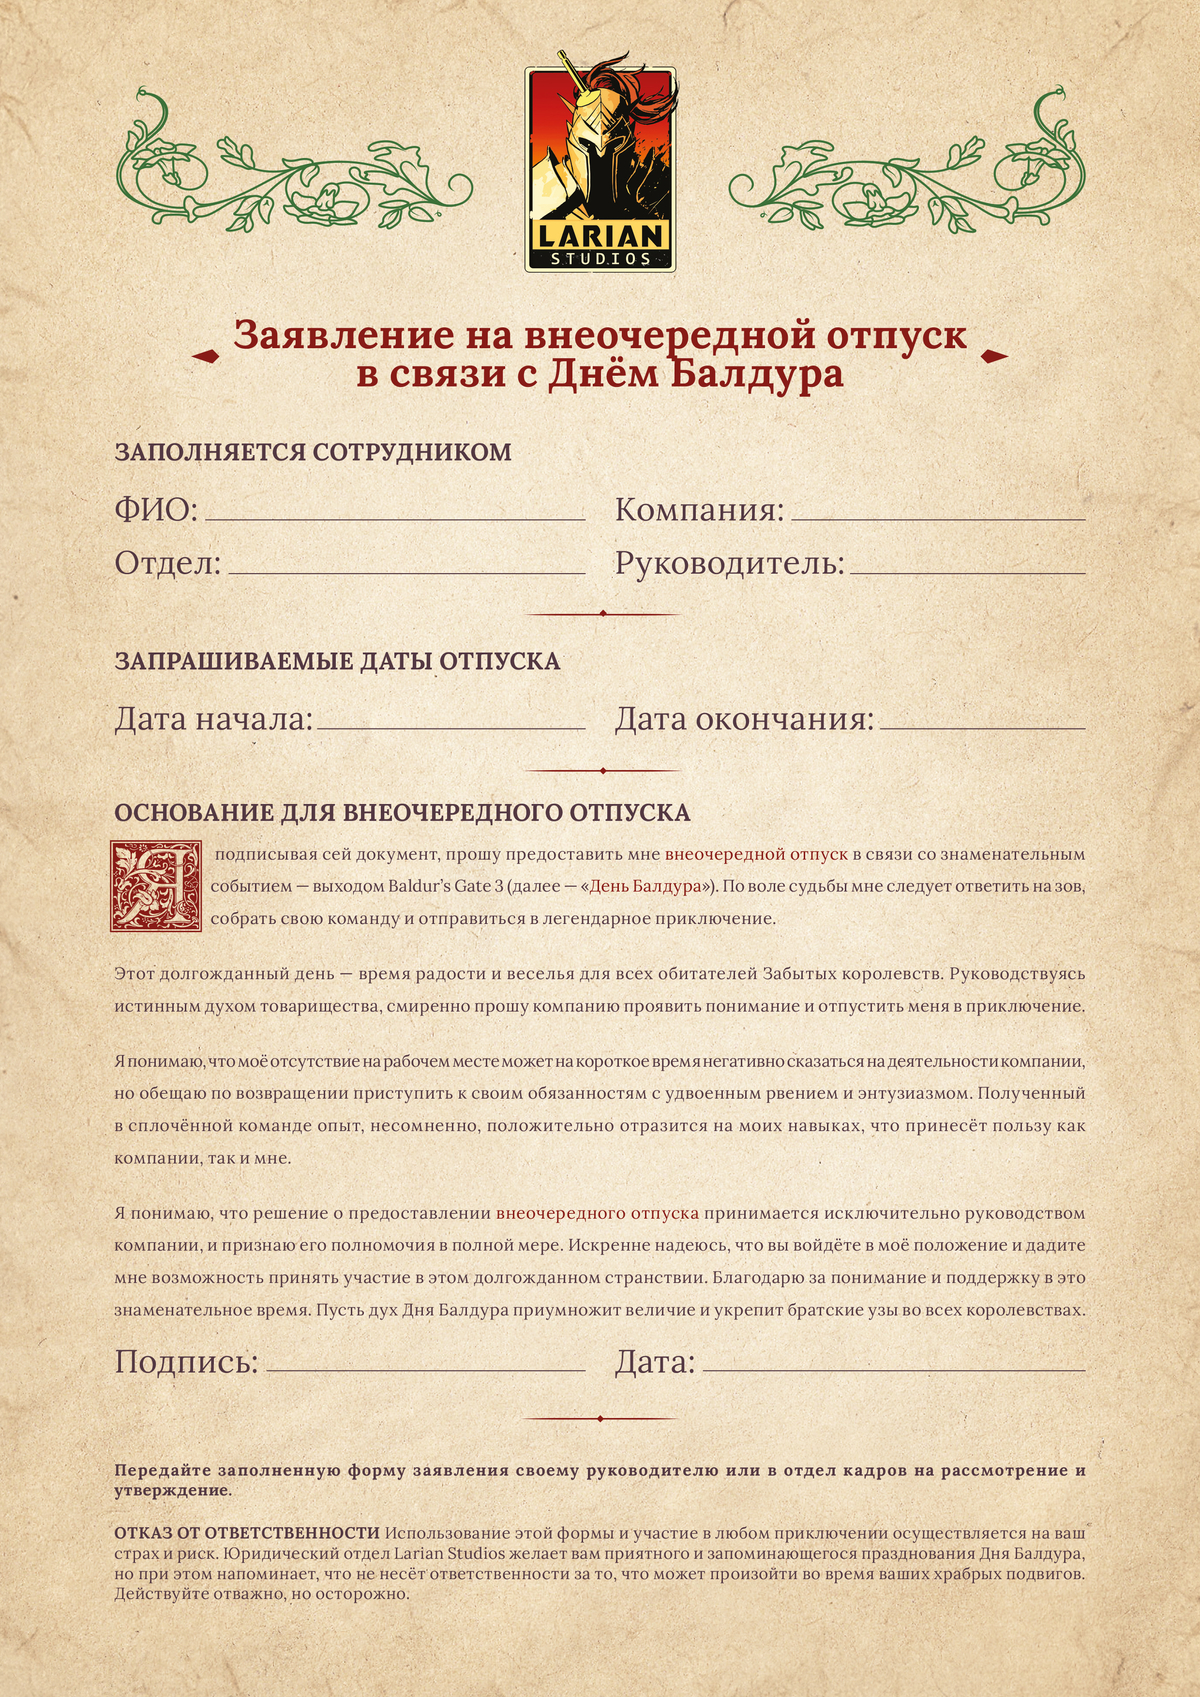 Заявление на отгул в честь Дня Балдура теперь доступно и на русском языке